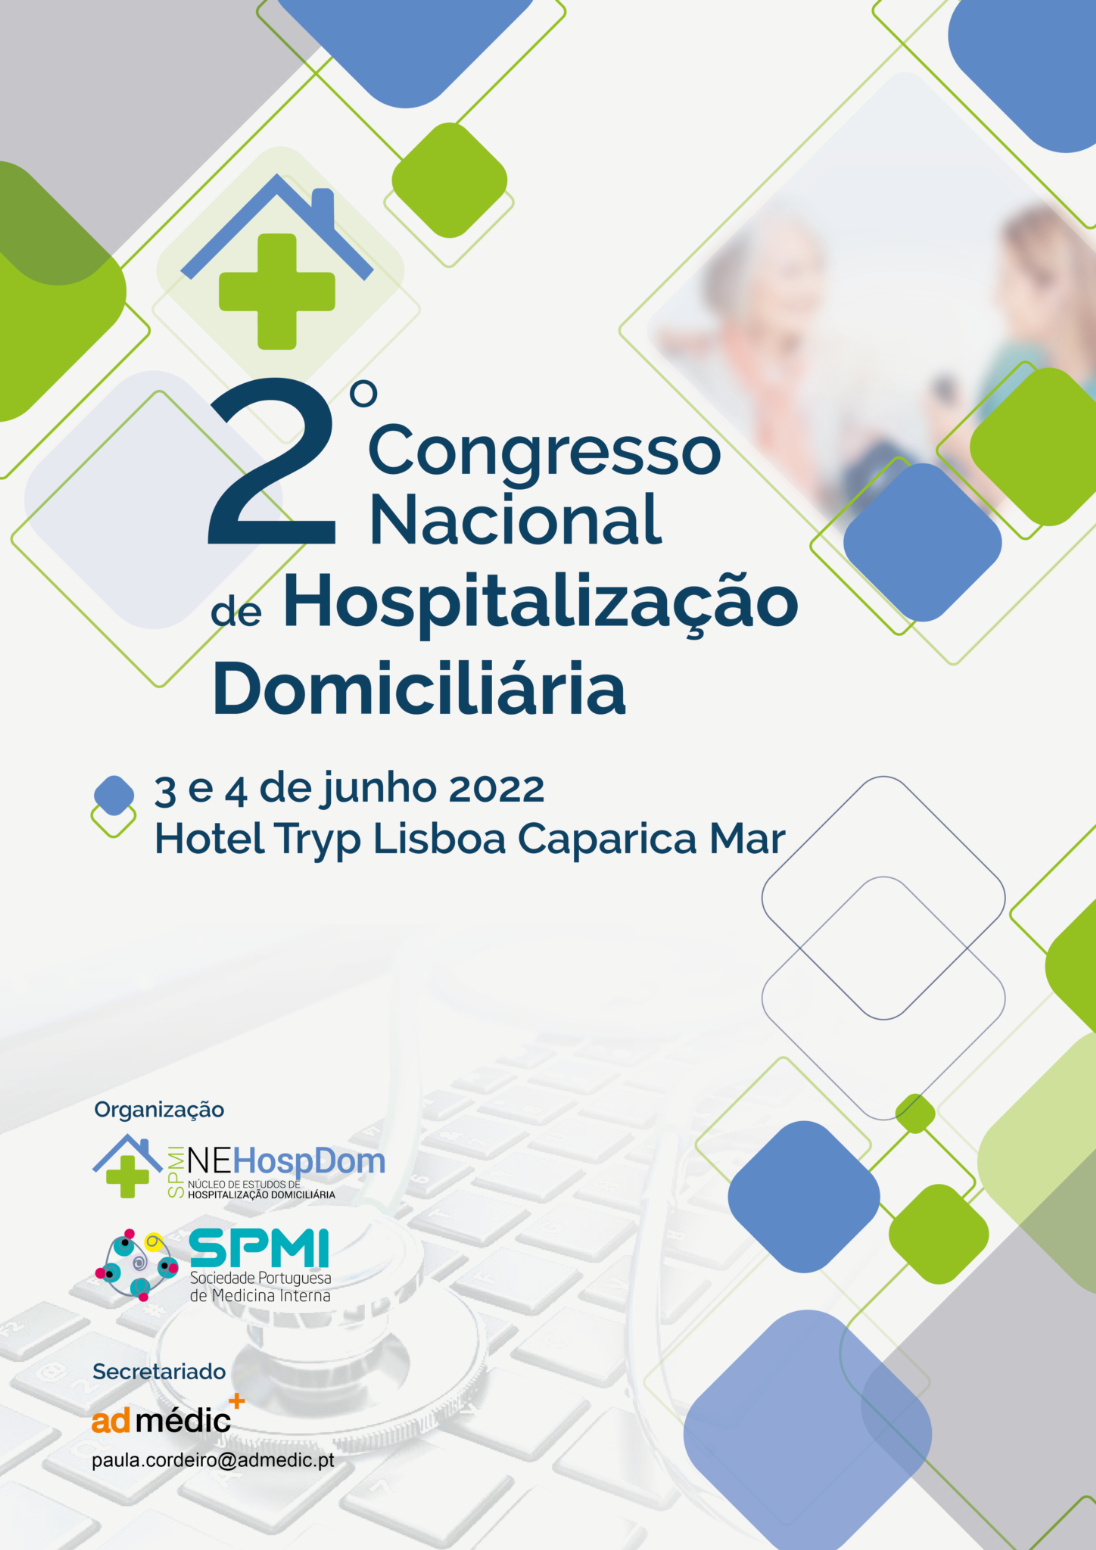 Hospitalização Domiciliária: especialistas reúnem-se para debater prática, desafios e impacto no SNS